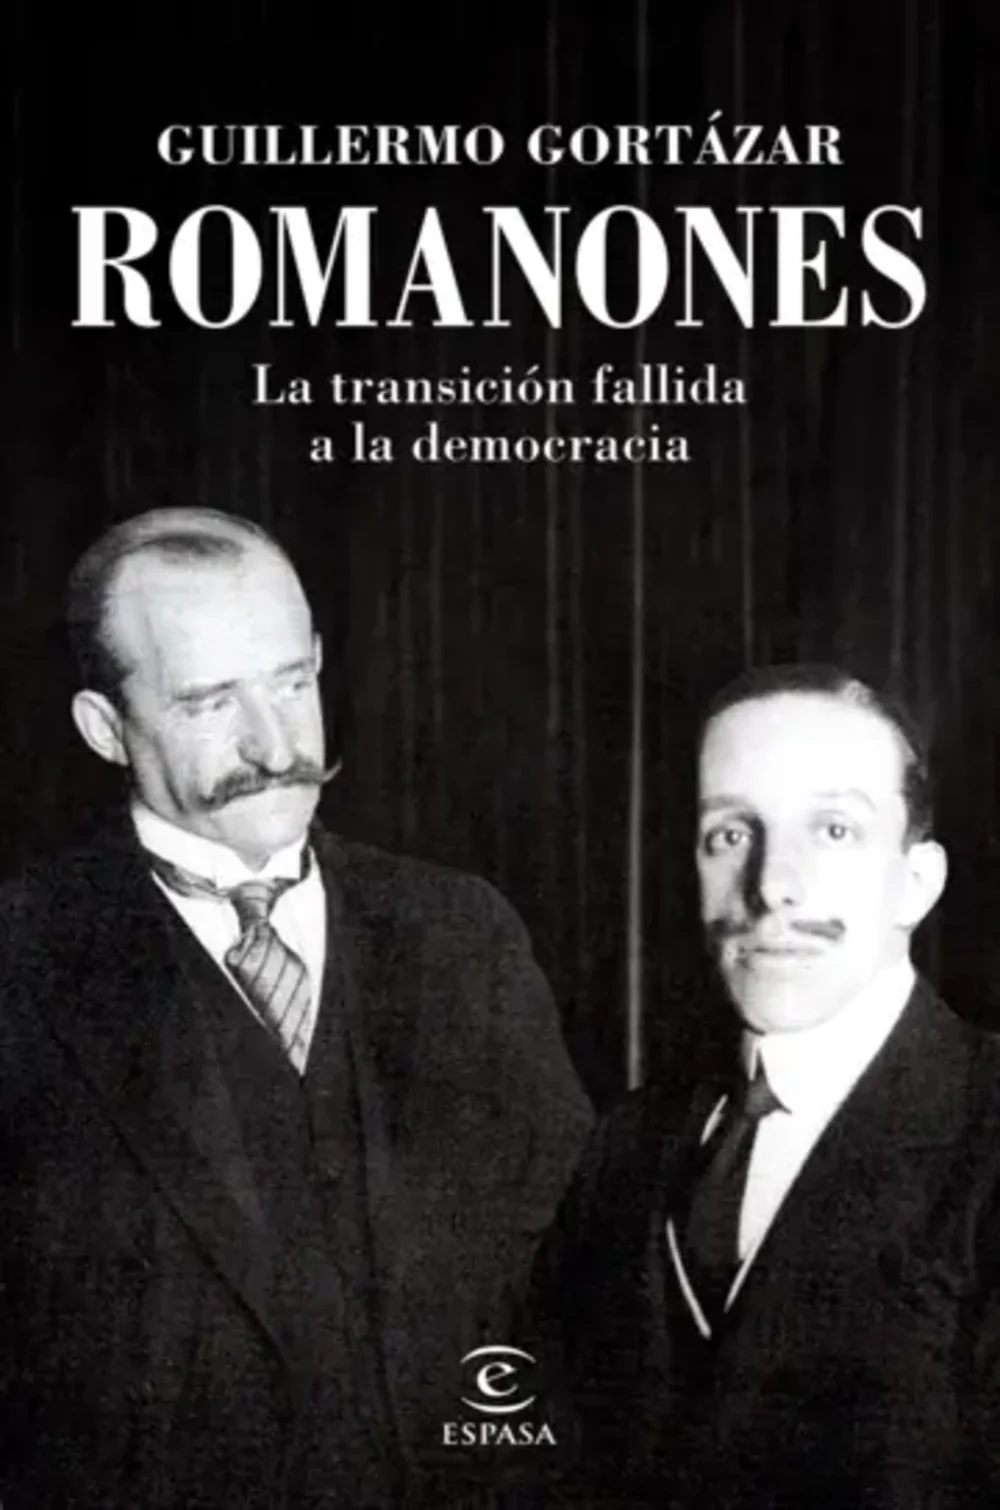 RomanonesGortázar, Guillermo